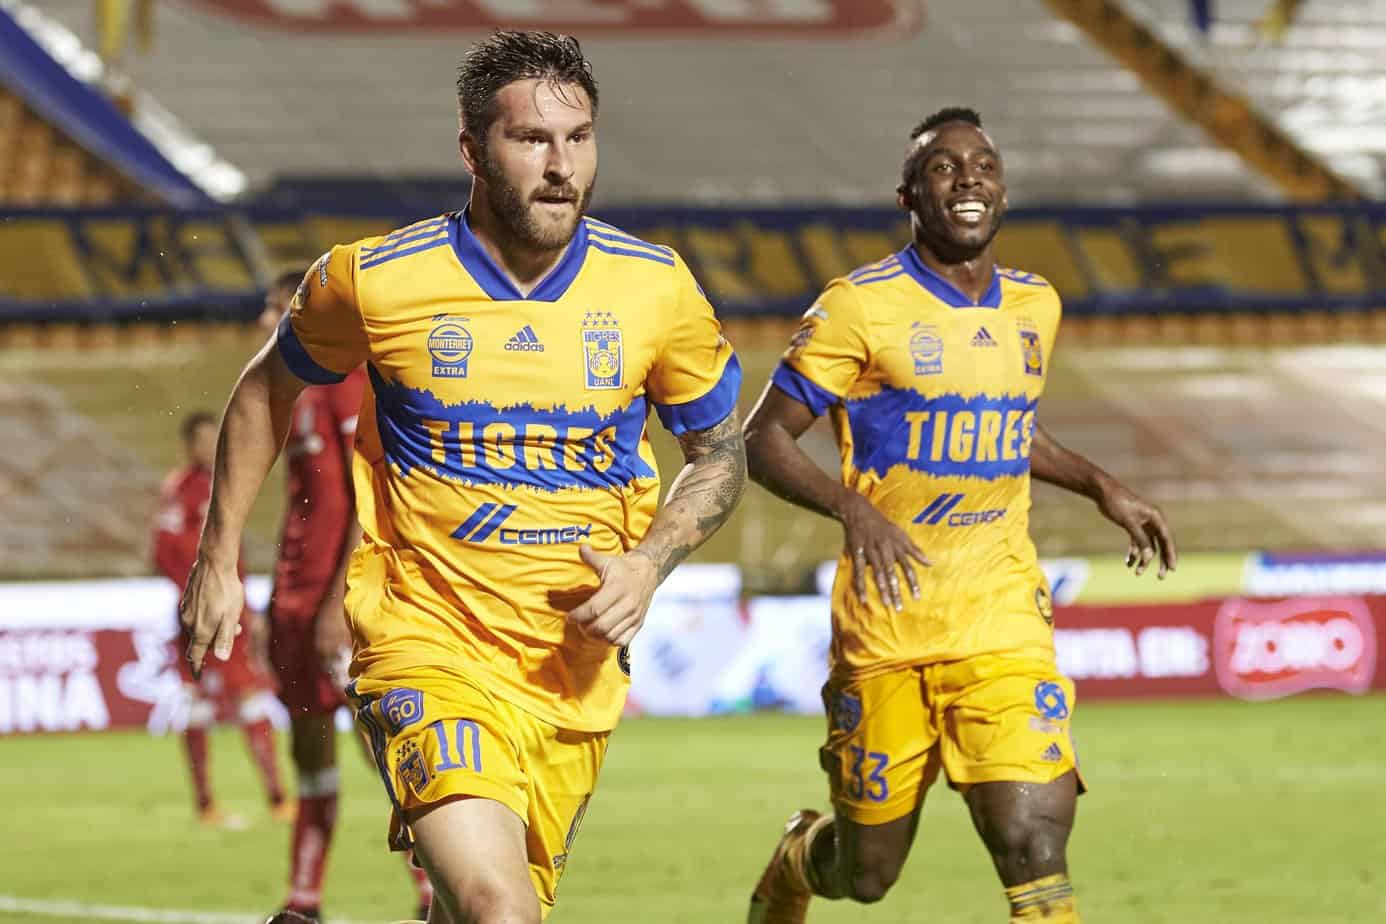 Tigres vs. Toluca – Betting Odds and Free Pick